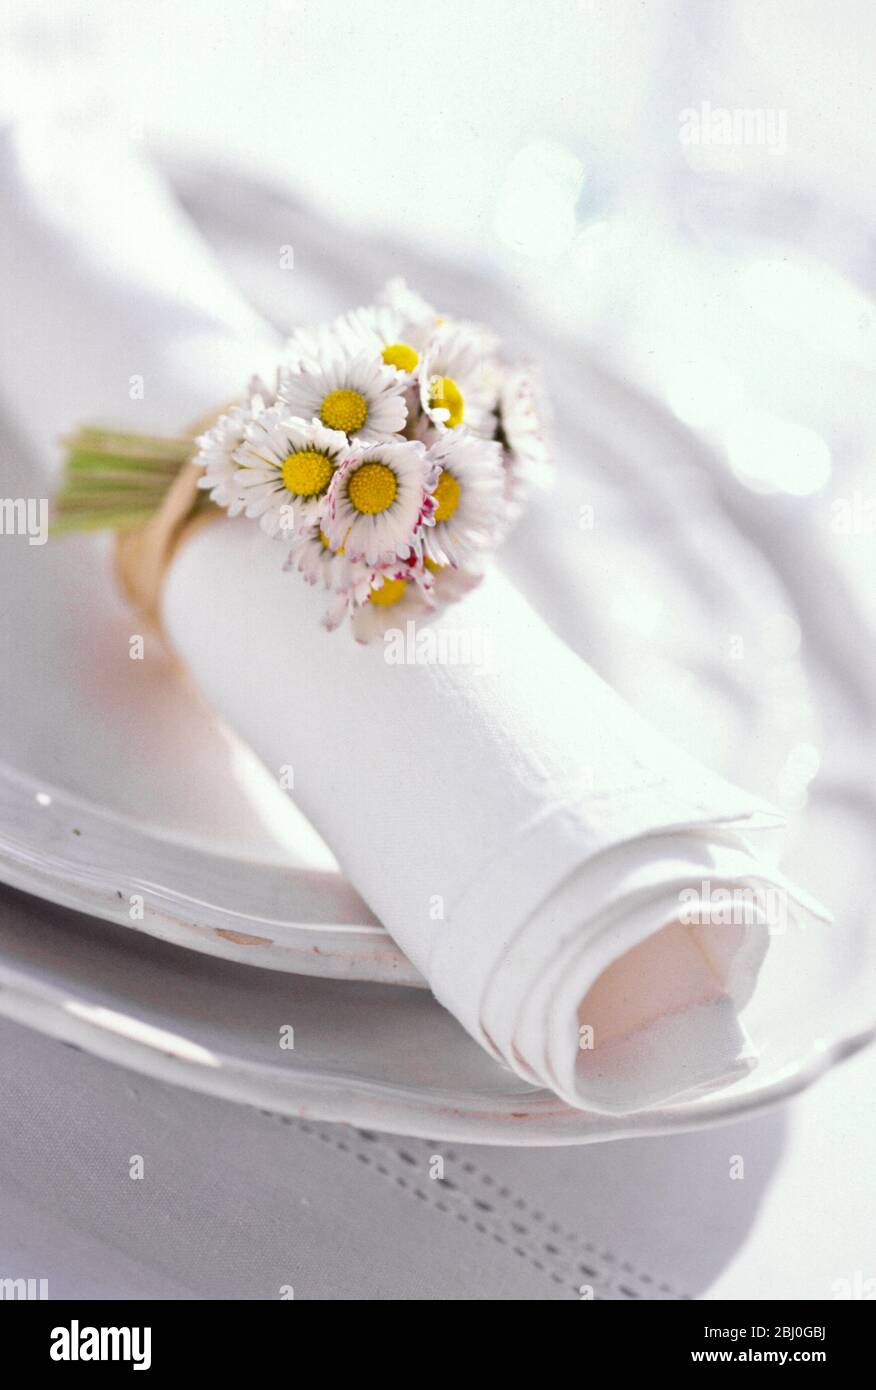 Tovagliolo bianco arrotolato legato con un mazzo di margherite, su piatti bianchi. - Foto Stock